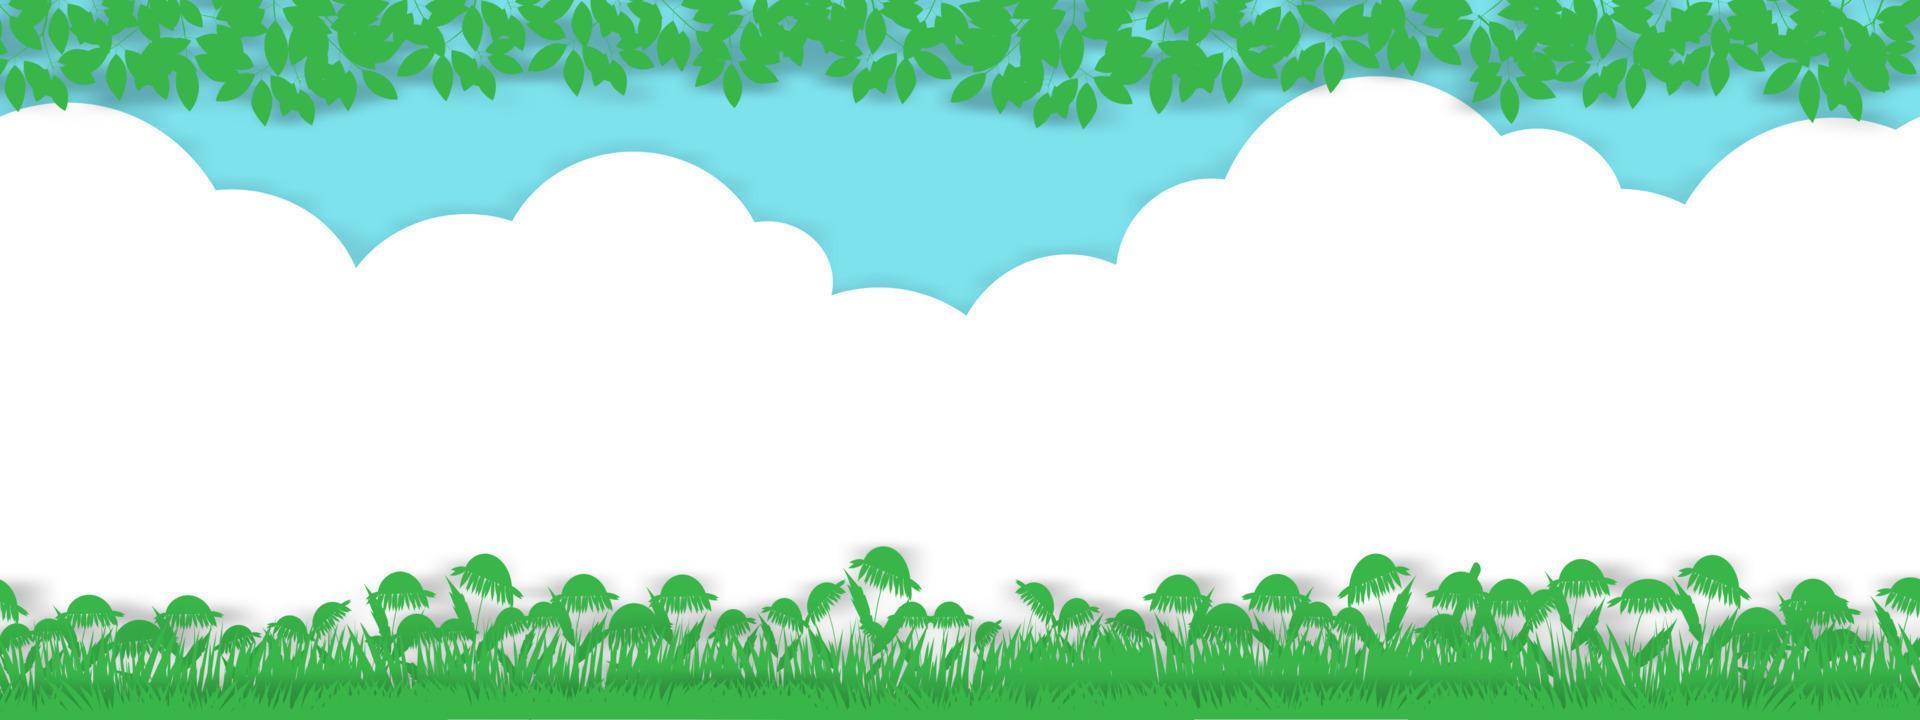 fundo de primavera com paisagem de campo de grama rural, borda de folhas verdes no fundo do céu azul, desenho animado vetorial para páscoa com espaço de cópia, banner de horizonte de pano de fundo para olá primavera, verão vetor